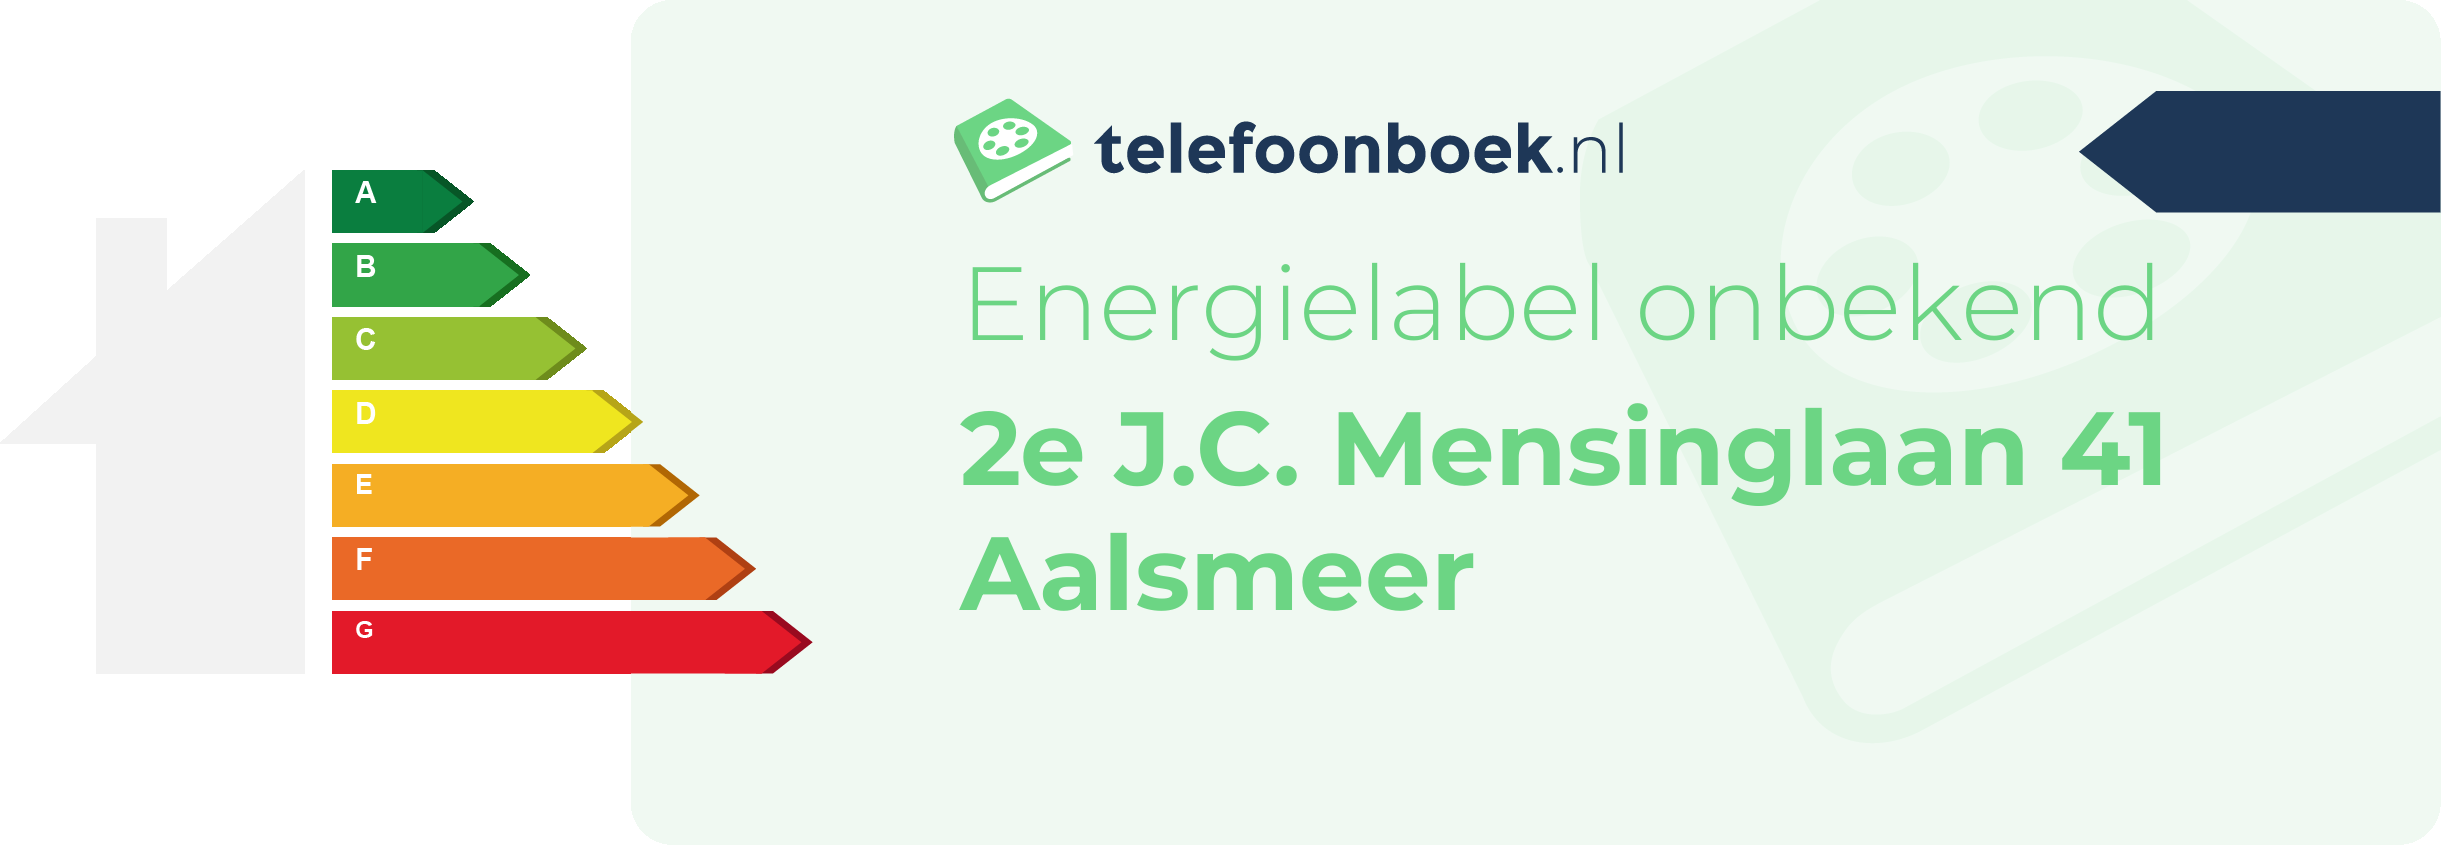 Energielabel 2e J.C. Mensinglaan 41 Aalsmeer